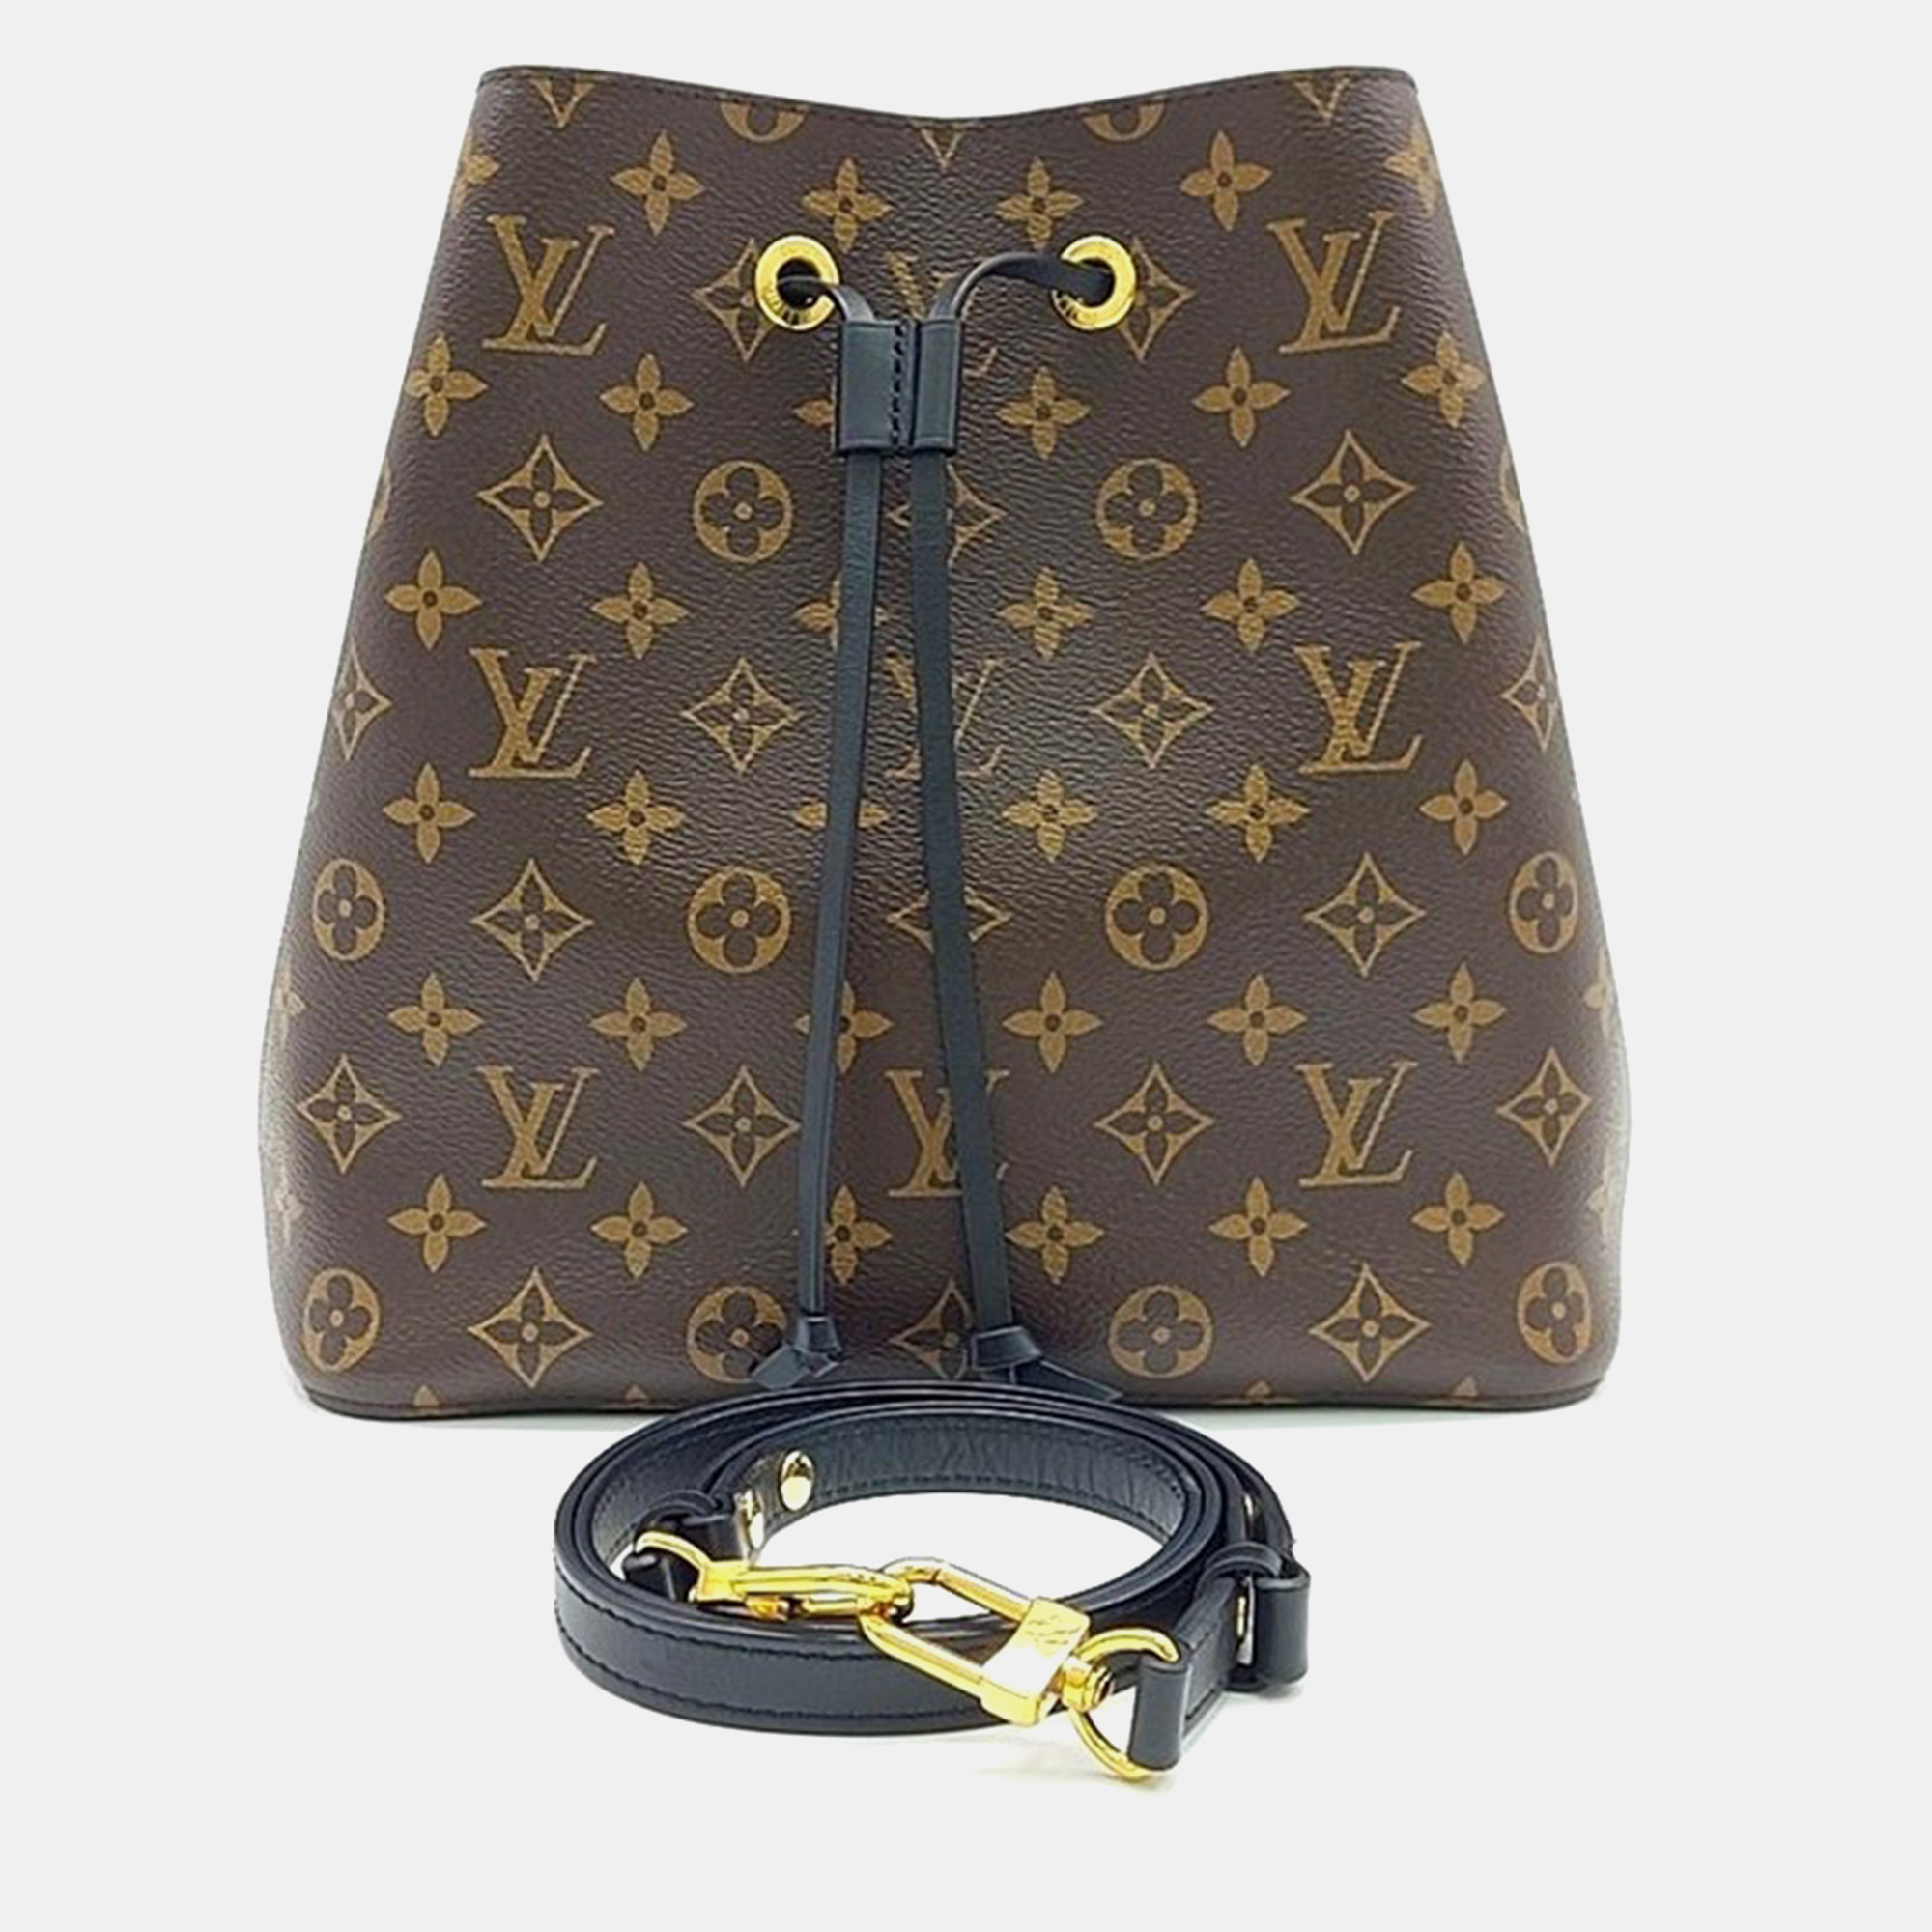 

Louis Vuitton NeoNoe M44020 Handbag, Brown